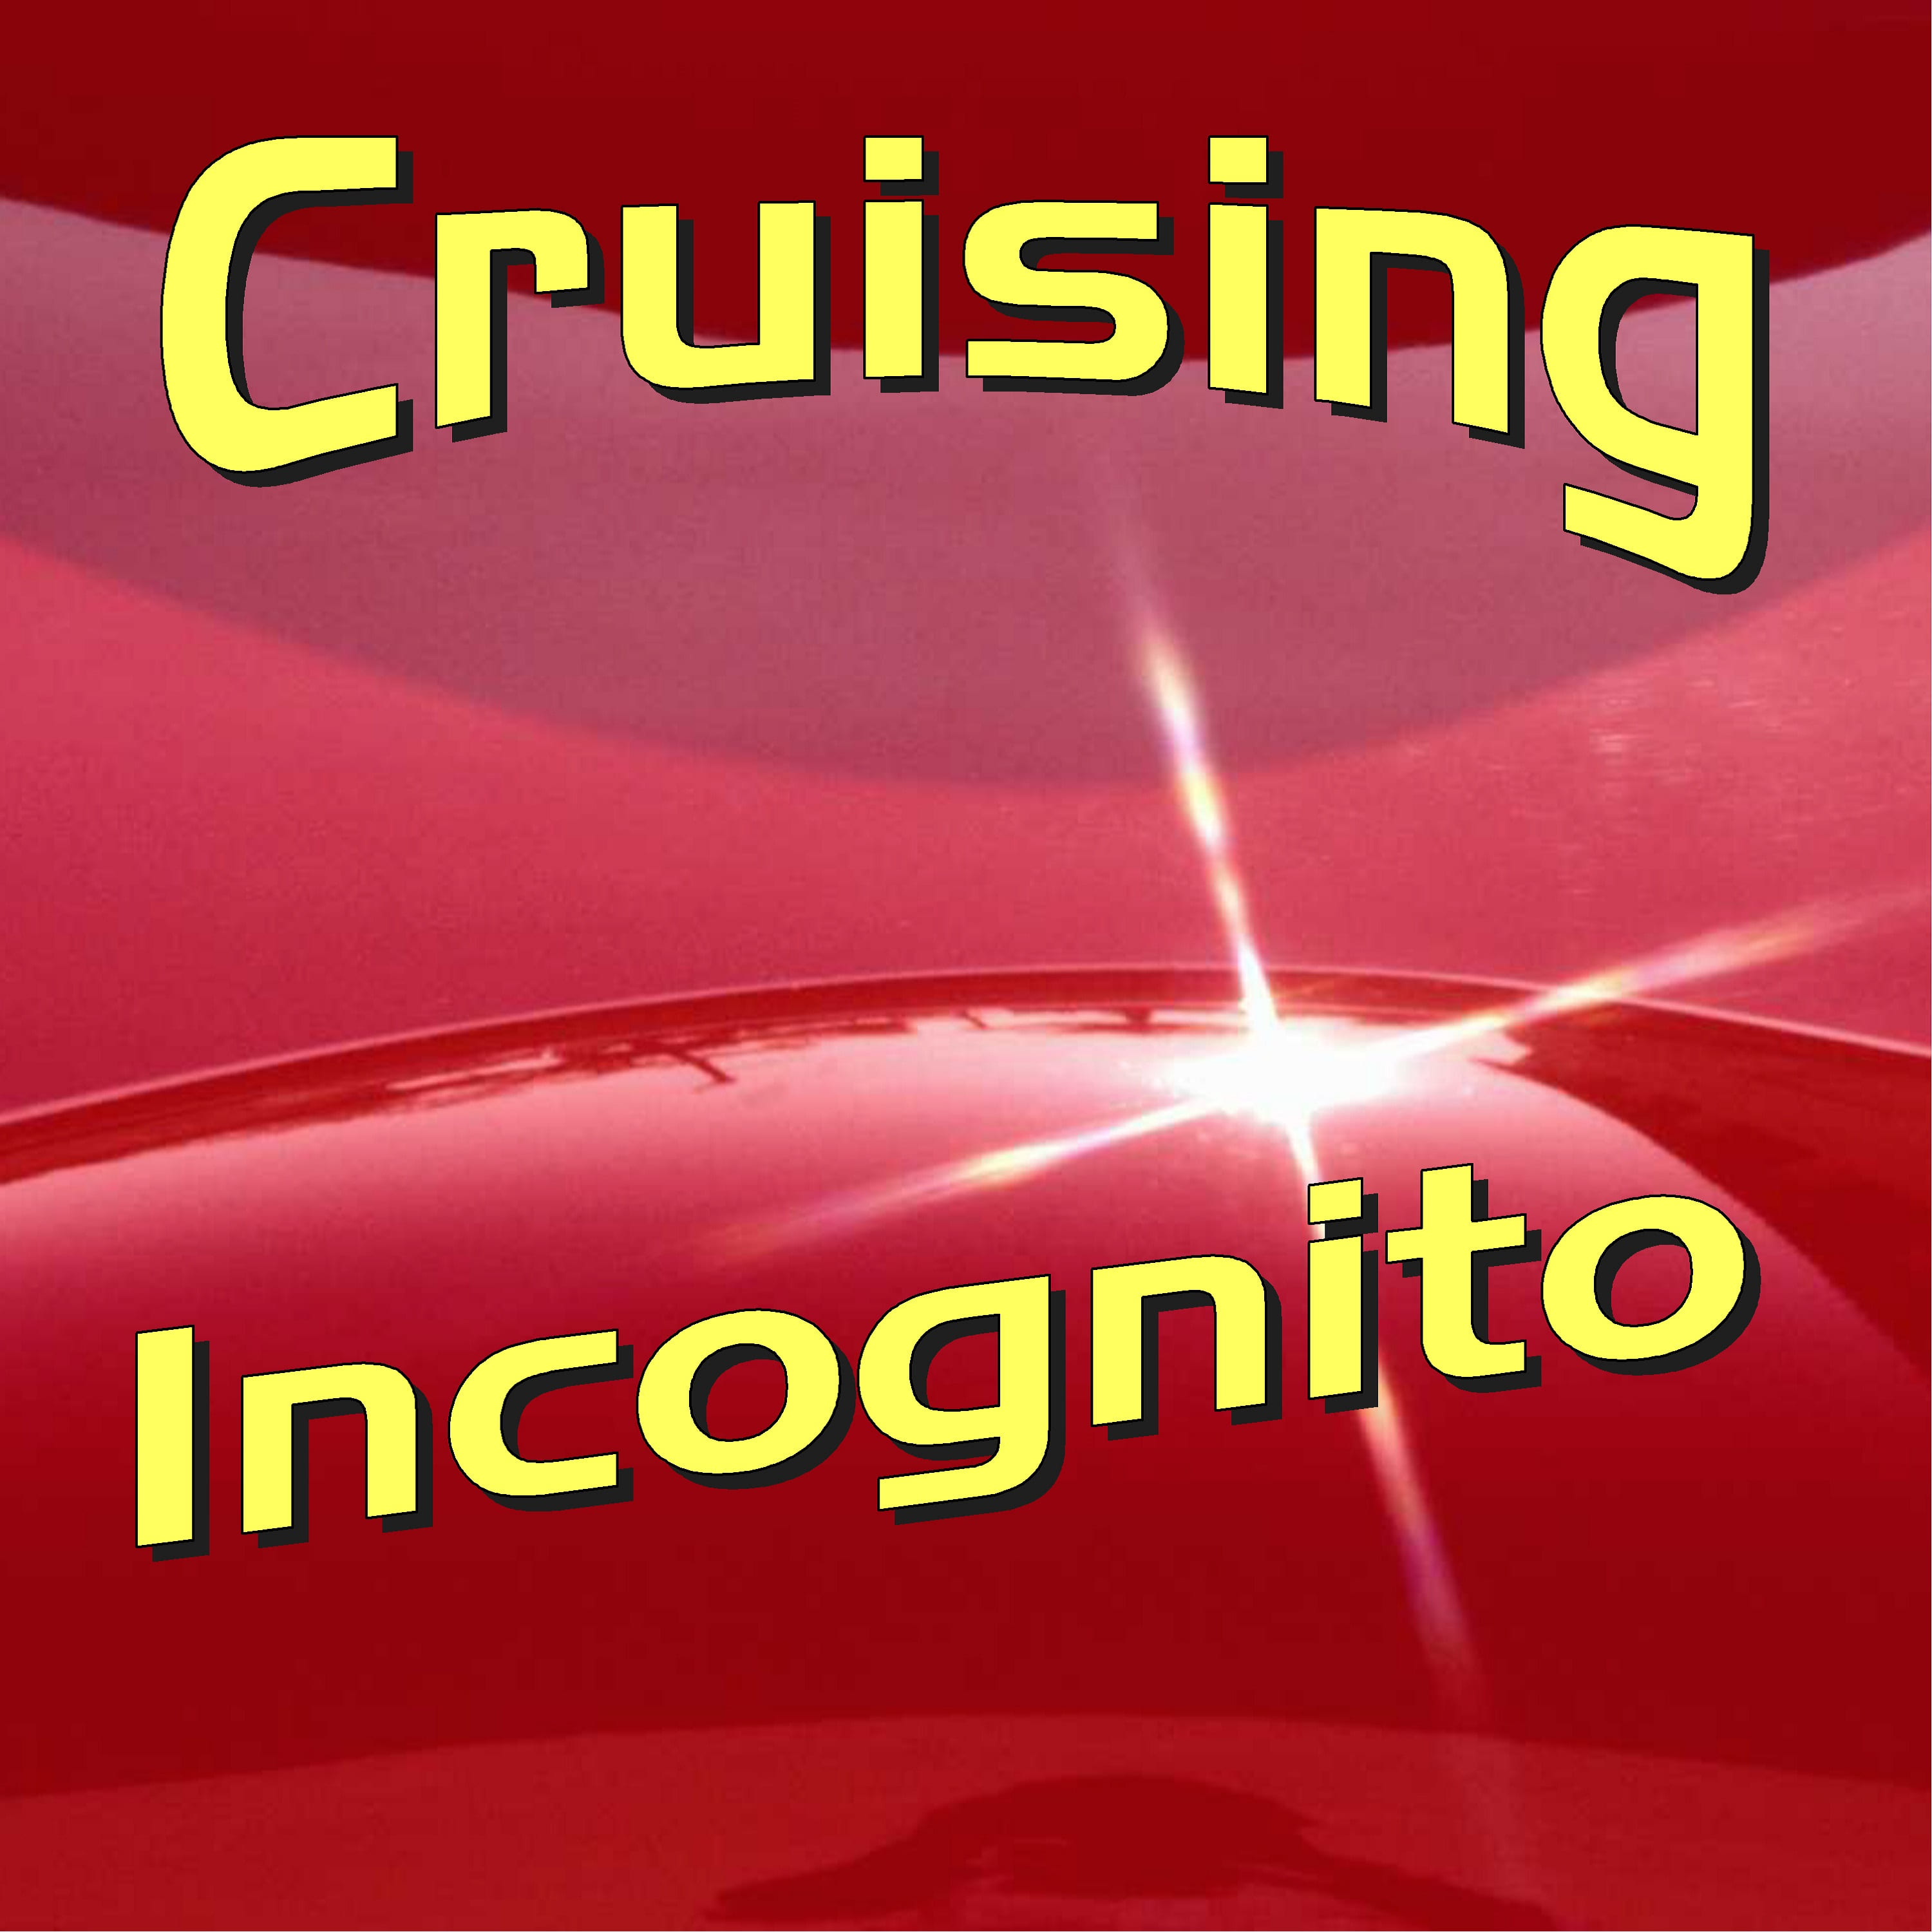 Incognito-For the Record